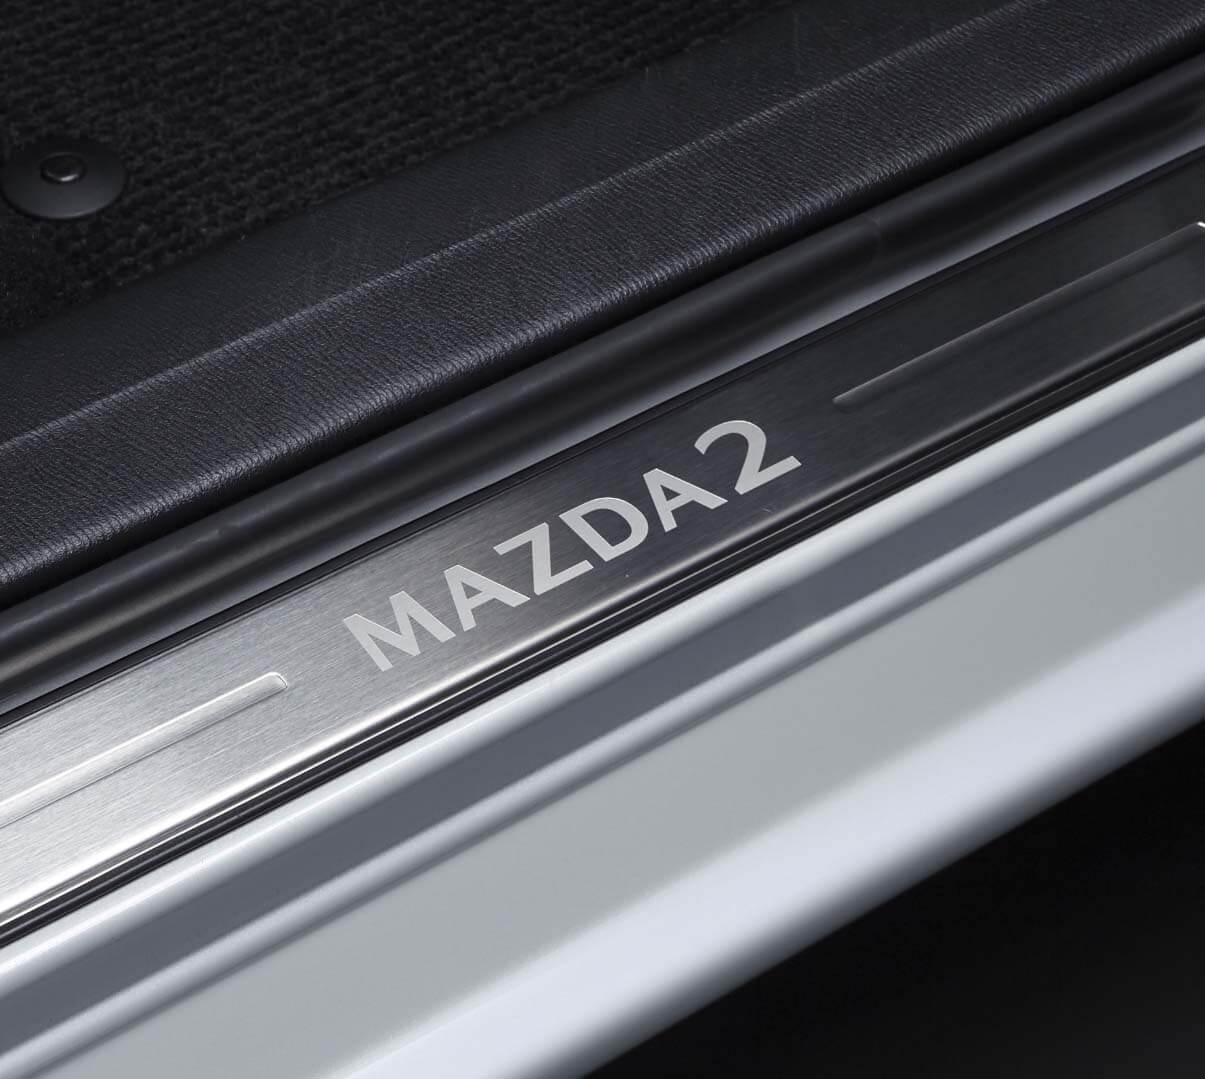 Τα κομψά διακοσμητικά θυρών προστατεύουν τα μαρσπιέ του Mazda2 από γρατζουνιές και γδαρσίματα.